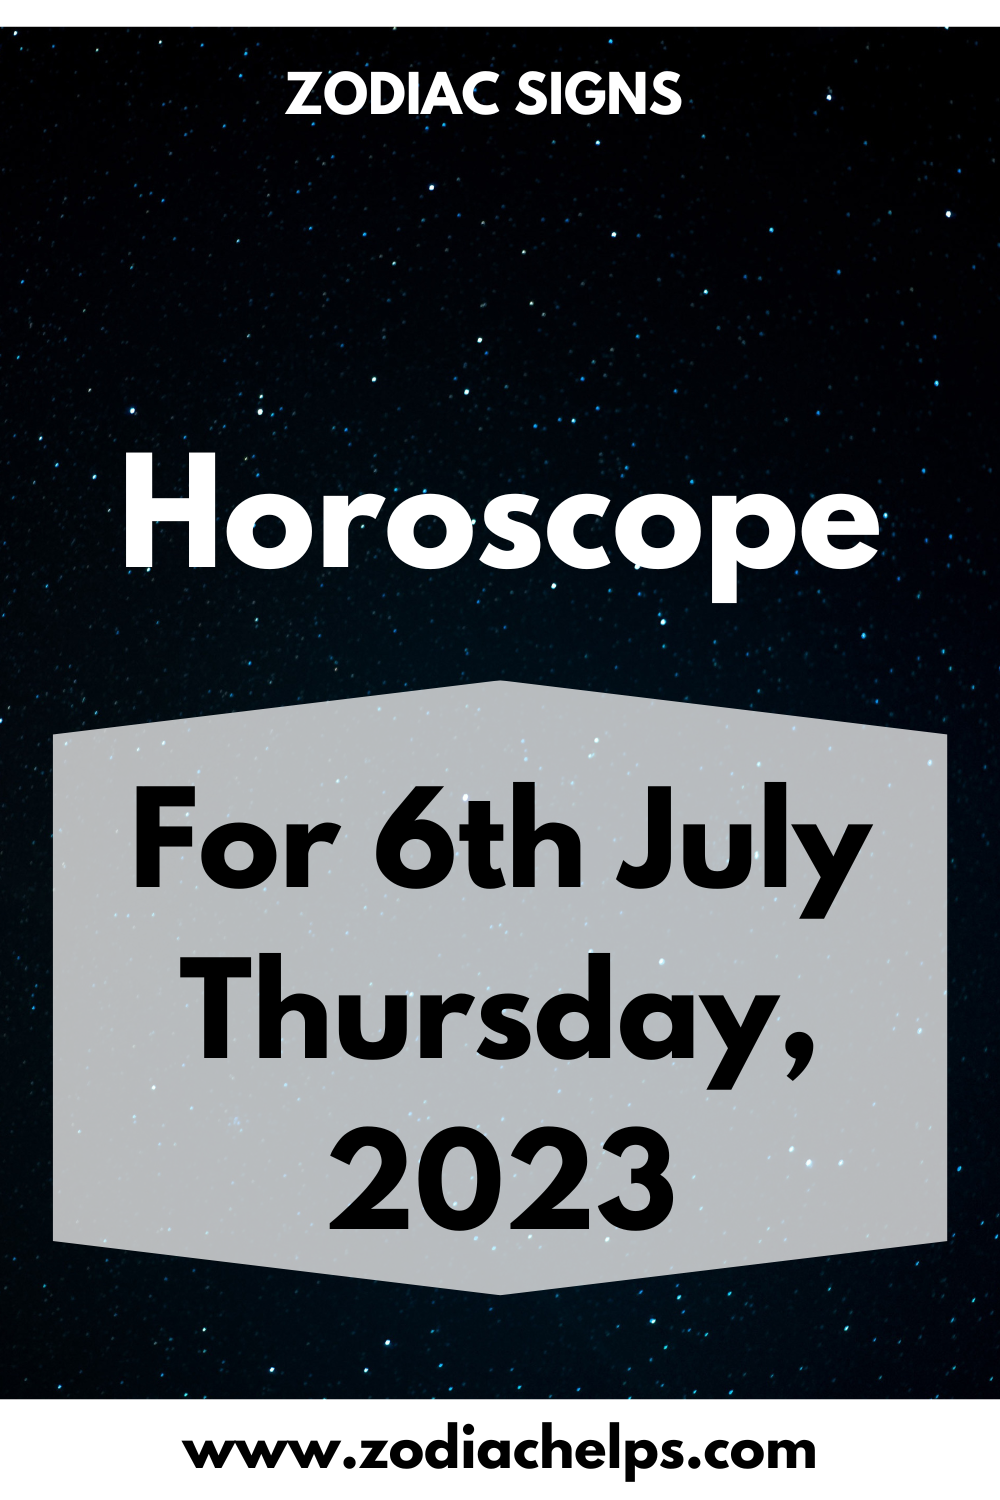 Horoscope for 6th July Thursday, 2023